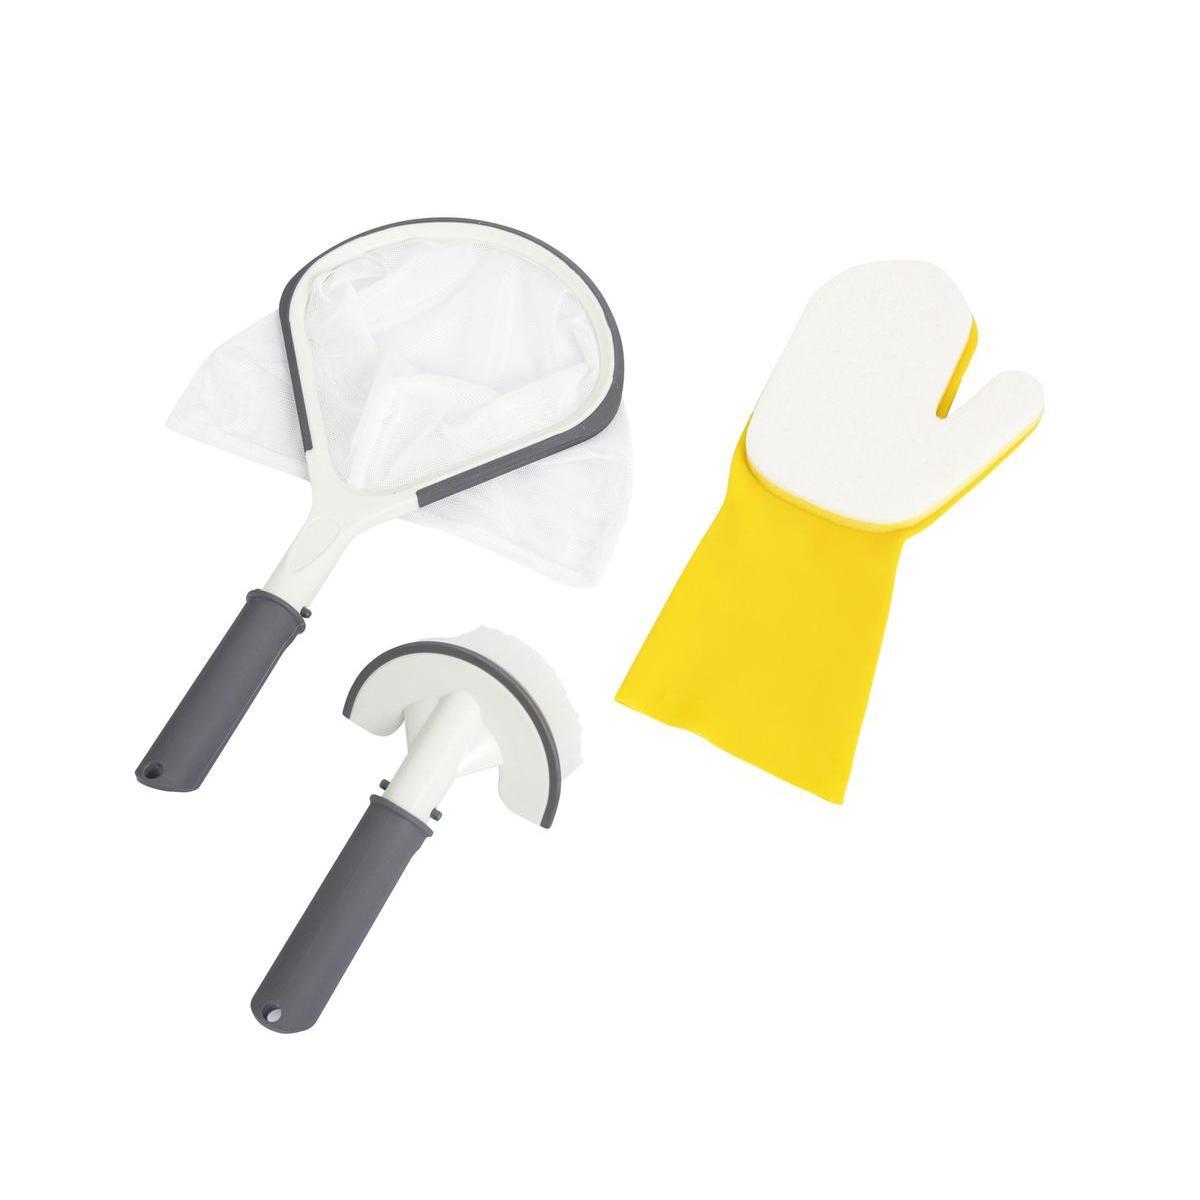 3 accessoires d'entretien pour spa Lay-z-spa - 8 x 28.5 x 45.5 cm - Blanc - BESTWAY